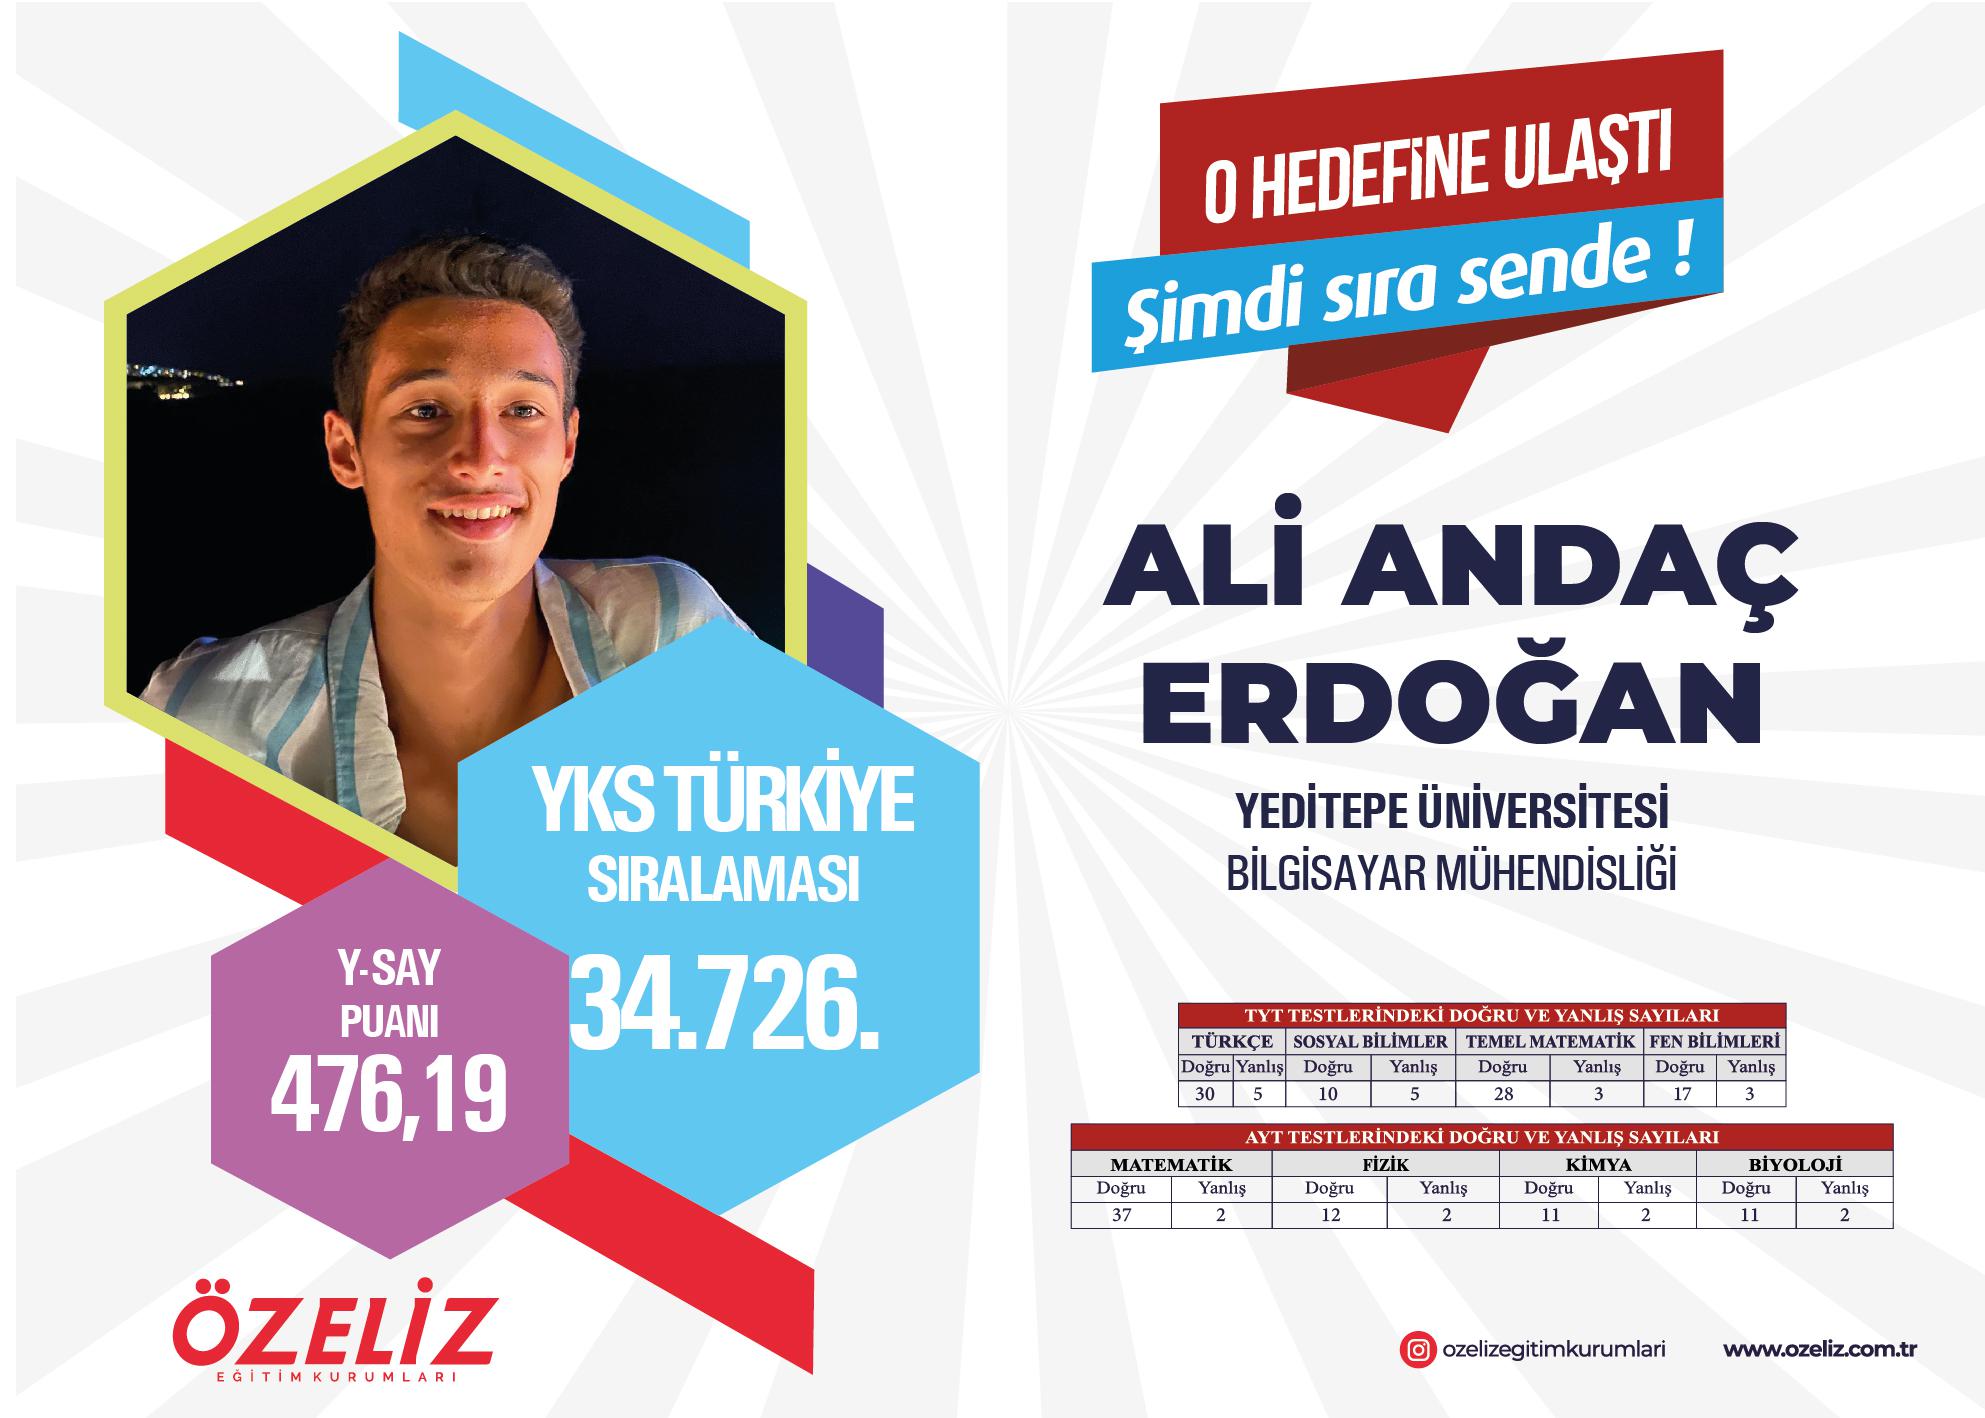 Ali Andaç Erdoğan